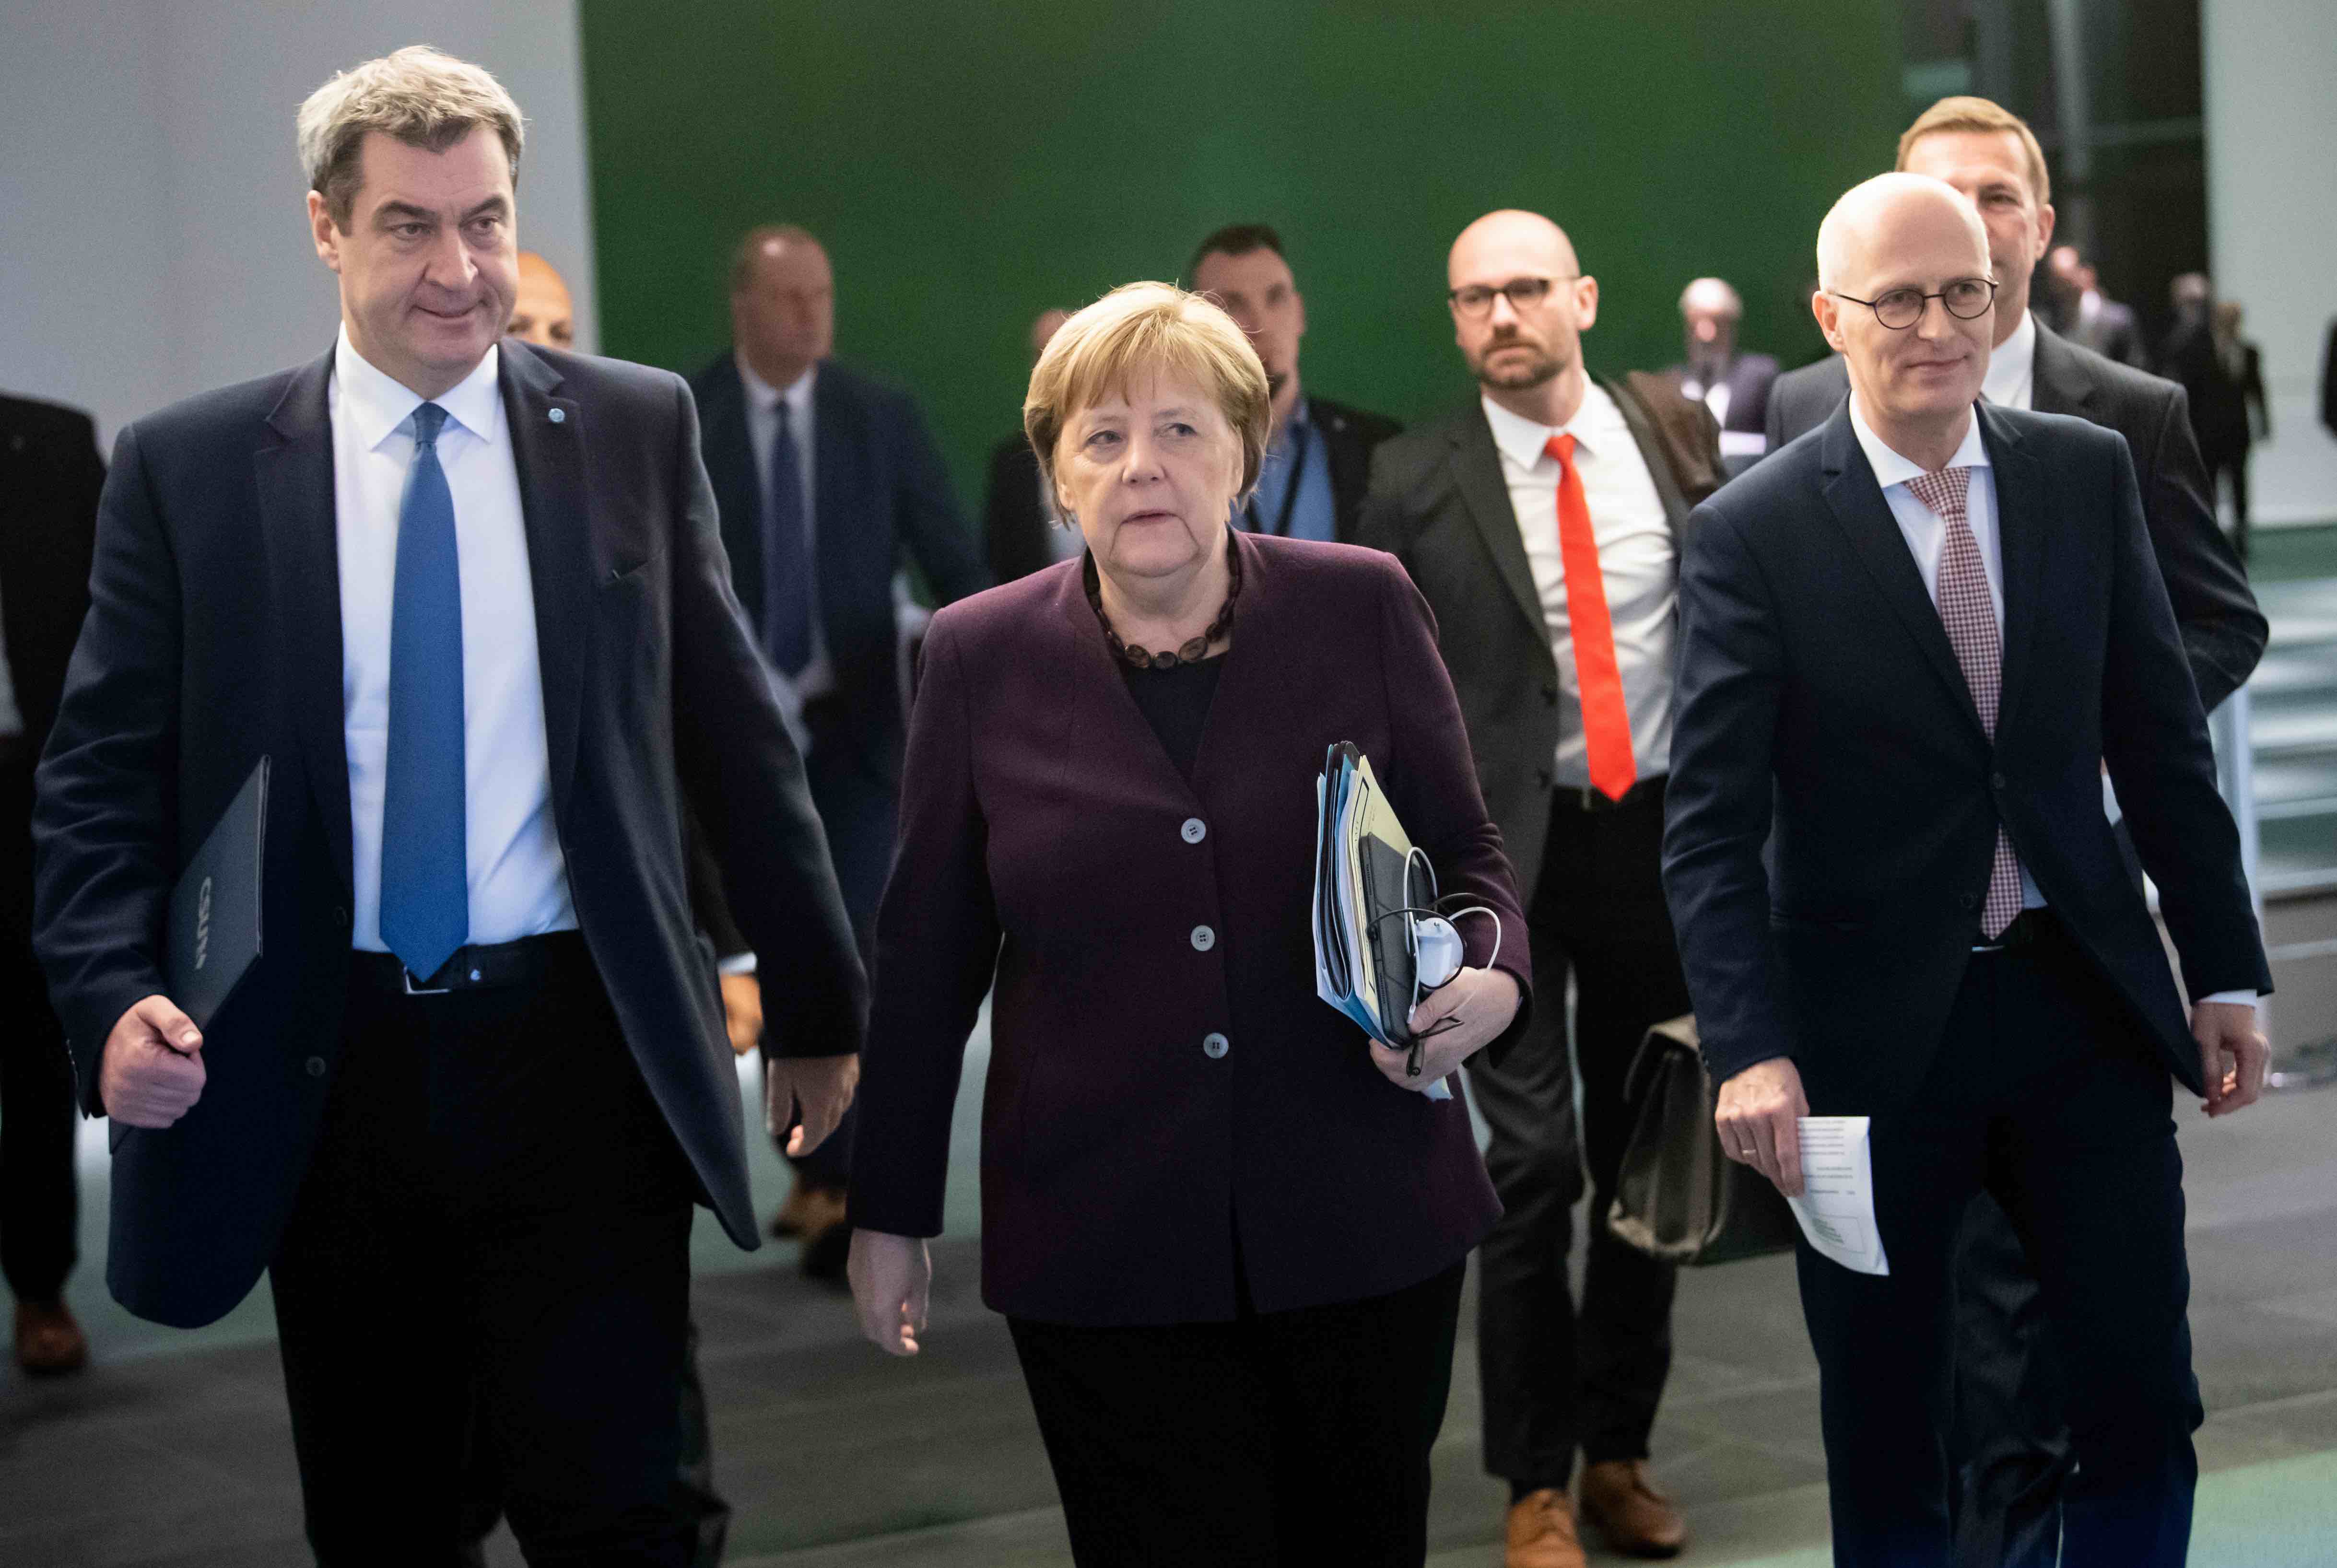 20201014-image-dpa-morning briefing-Merkel Ministerpräsidenten